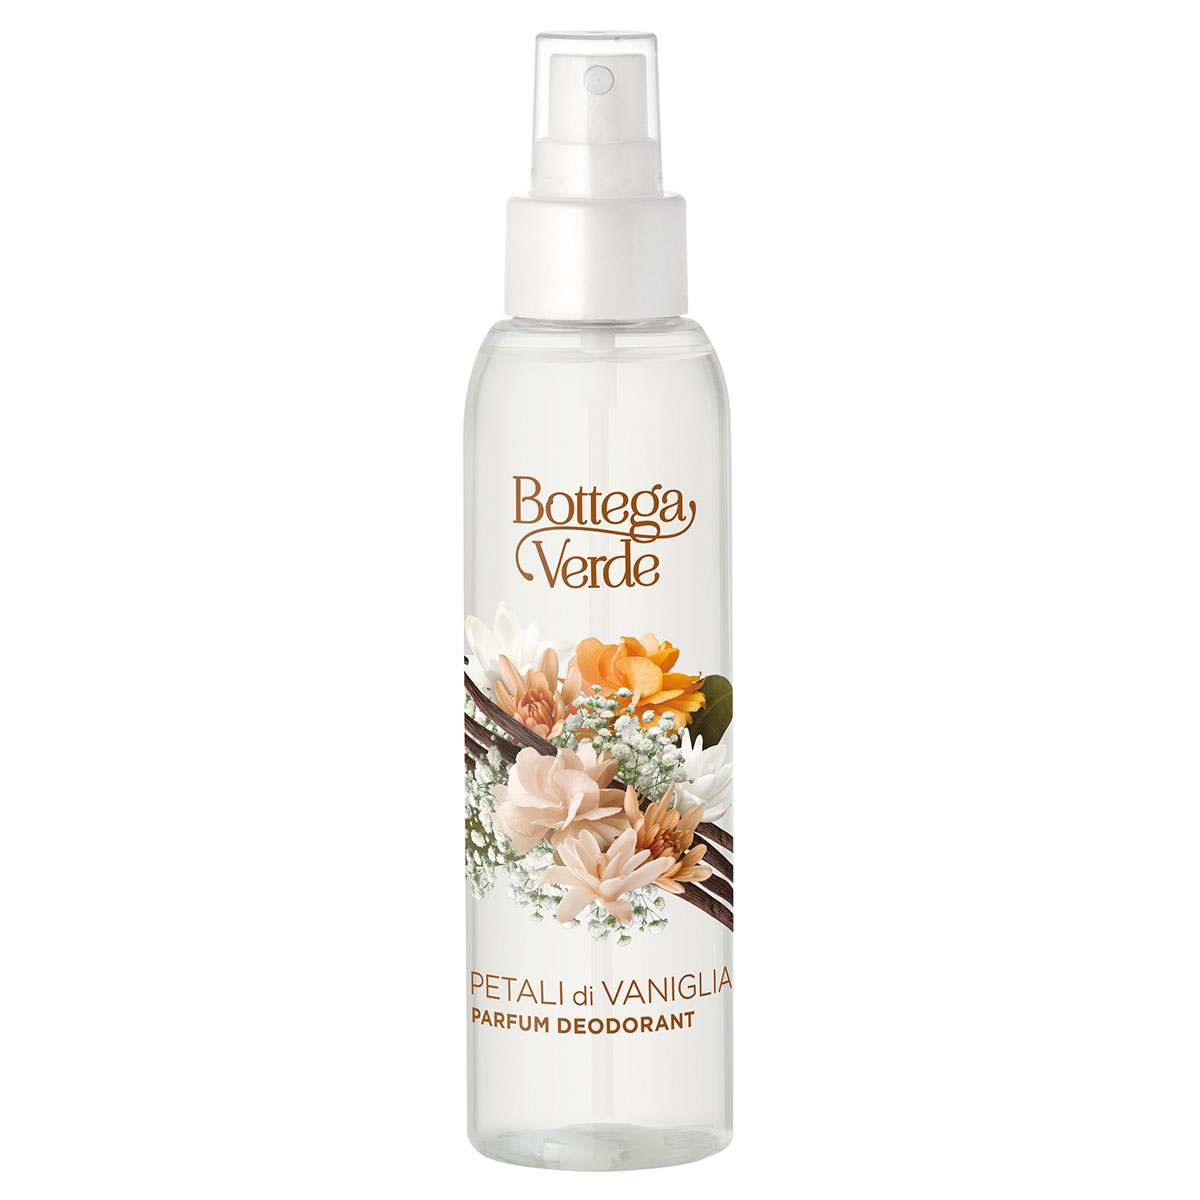 Parfum deodorant, delicat, cu aroma de vanilie Bottega Verde imagine noua marillys.ro